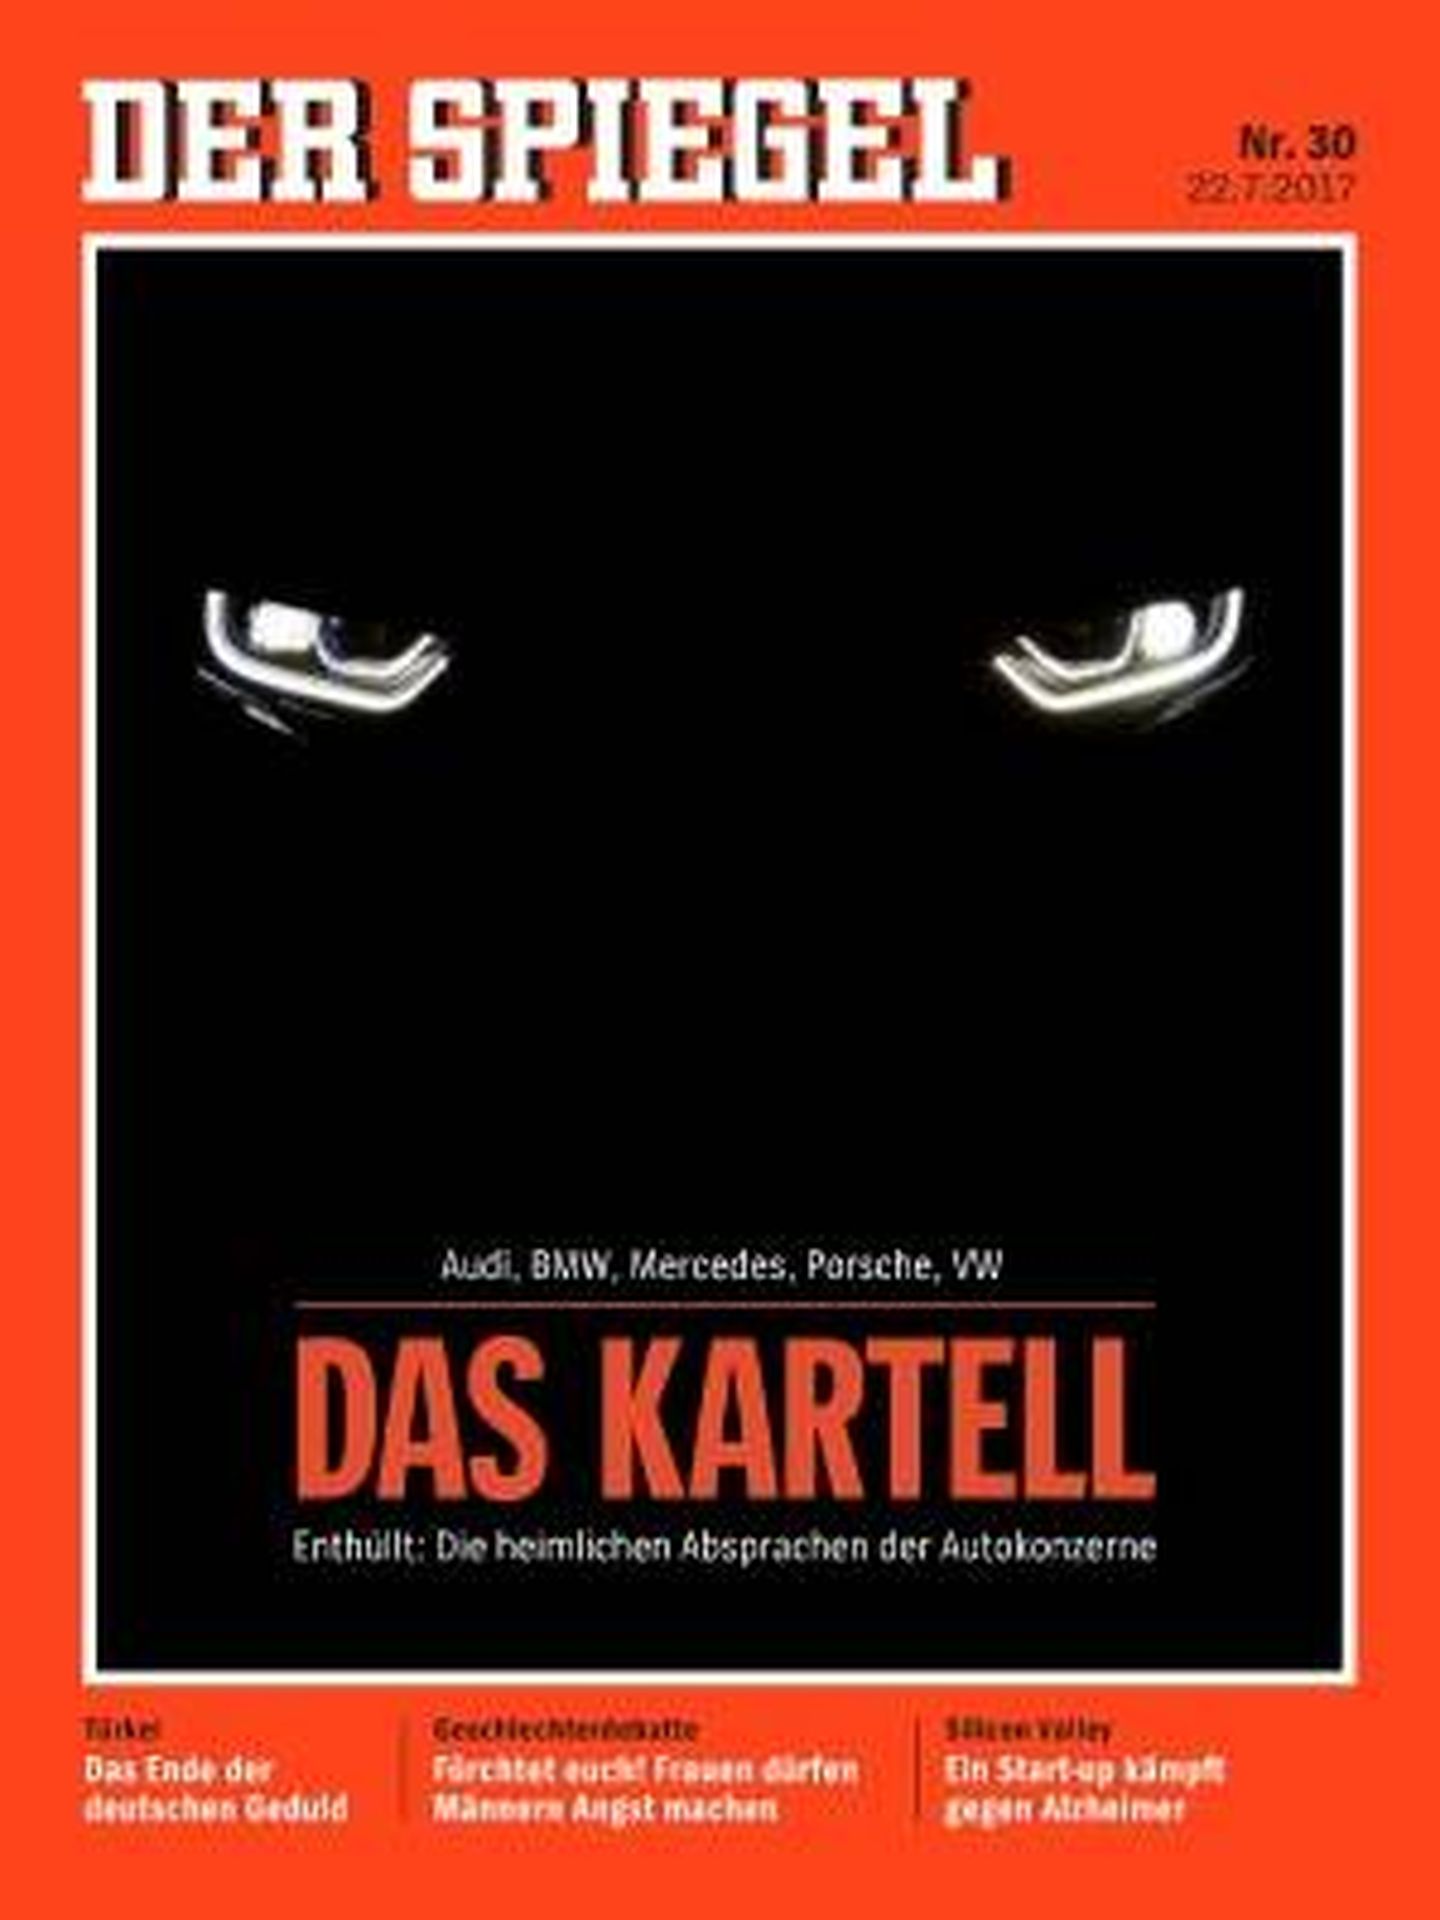 Portada del semanario 'Der Spiegel' con el reportaje sobre los fabricantes alemanes.